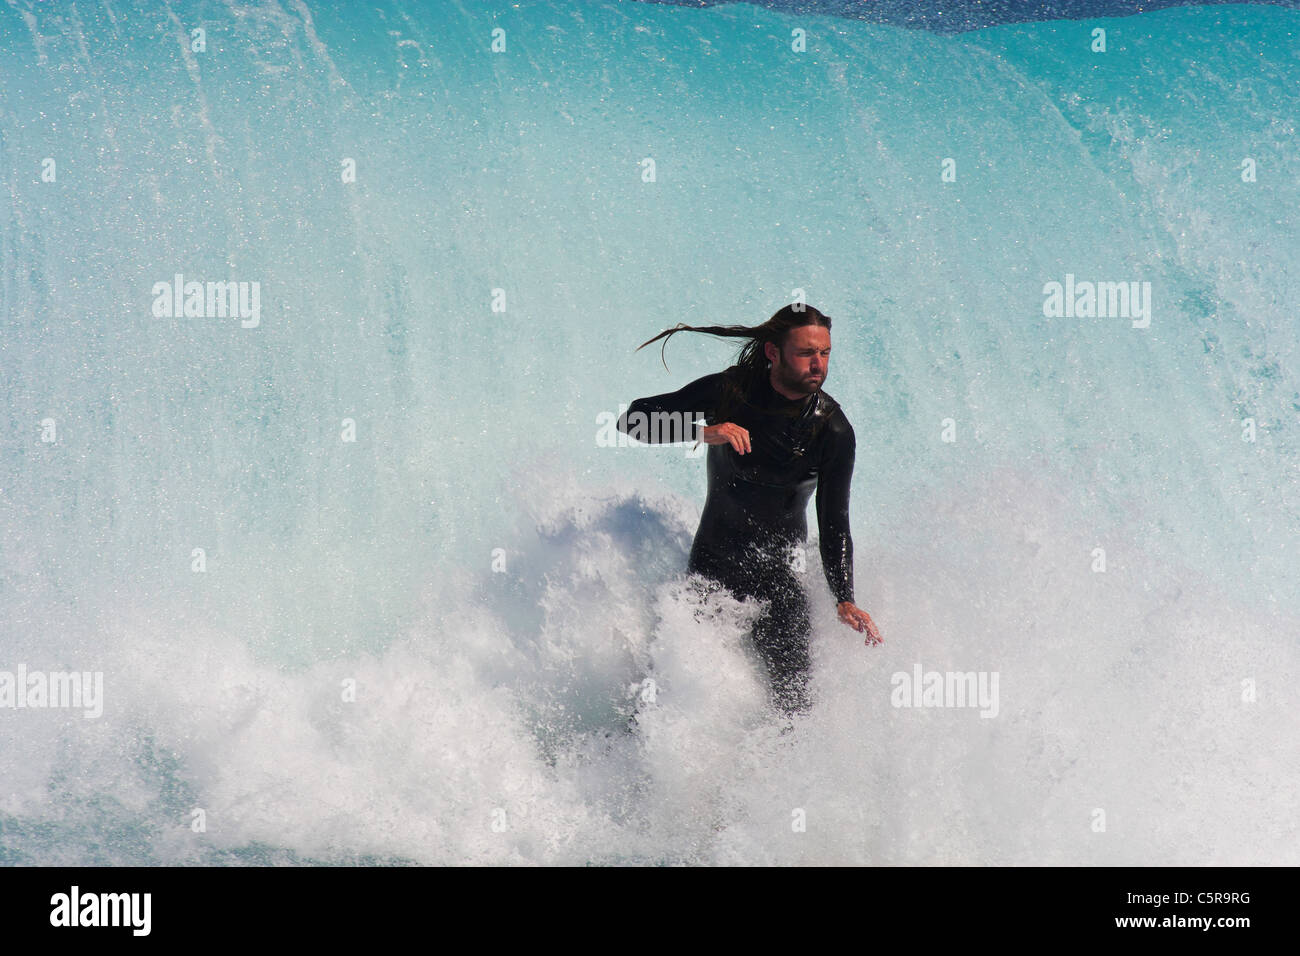 Diese Surfer nimmt einen tiefen Atemzug, wie er durch die massive Welle hinter ihm herausgenommen werden soll. Stockfoto